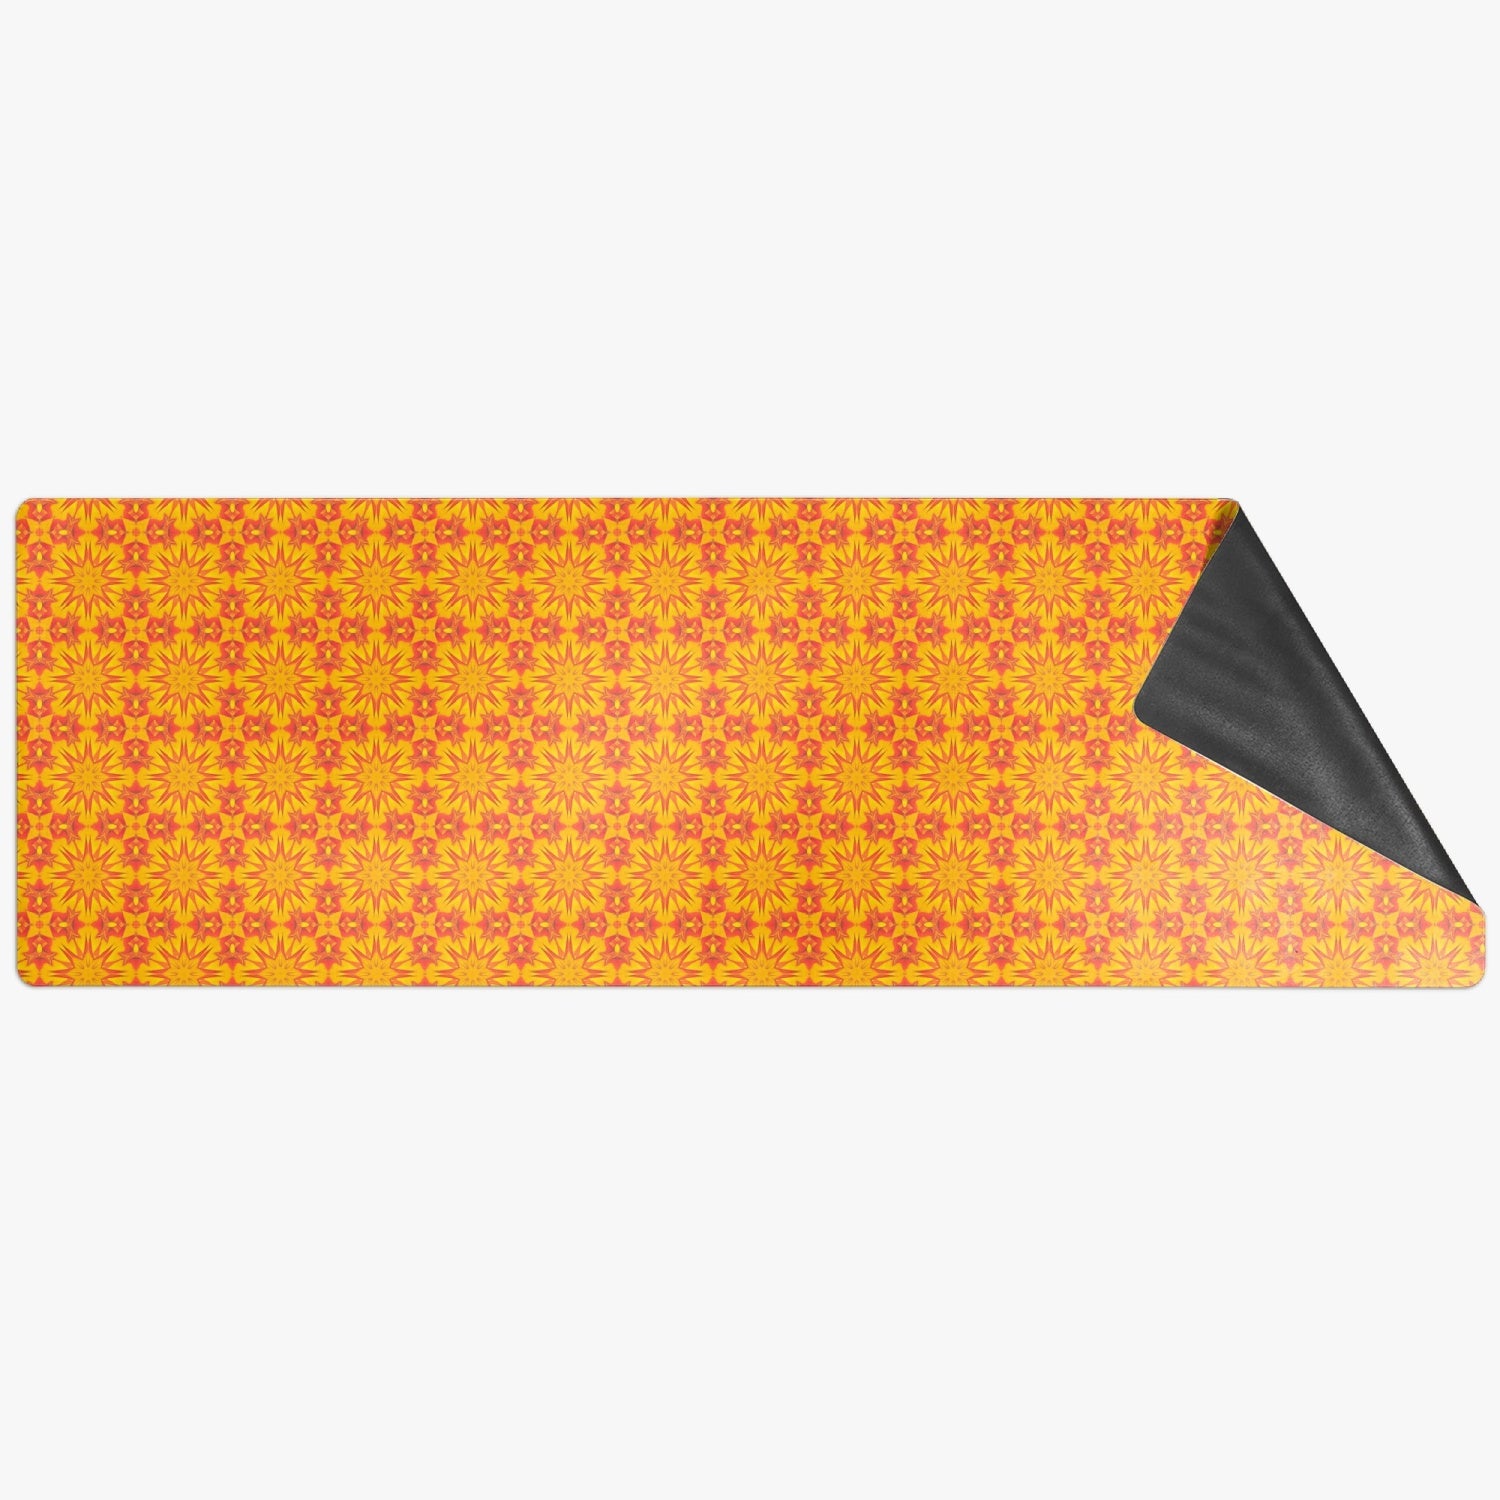 The Sun Solar Plexus Chacra  Suede Anti-slip Yoga Mat, by Sensus Studio Design